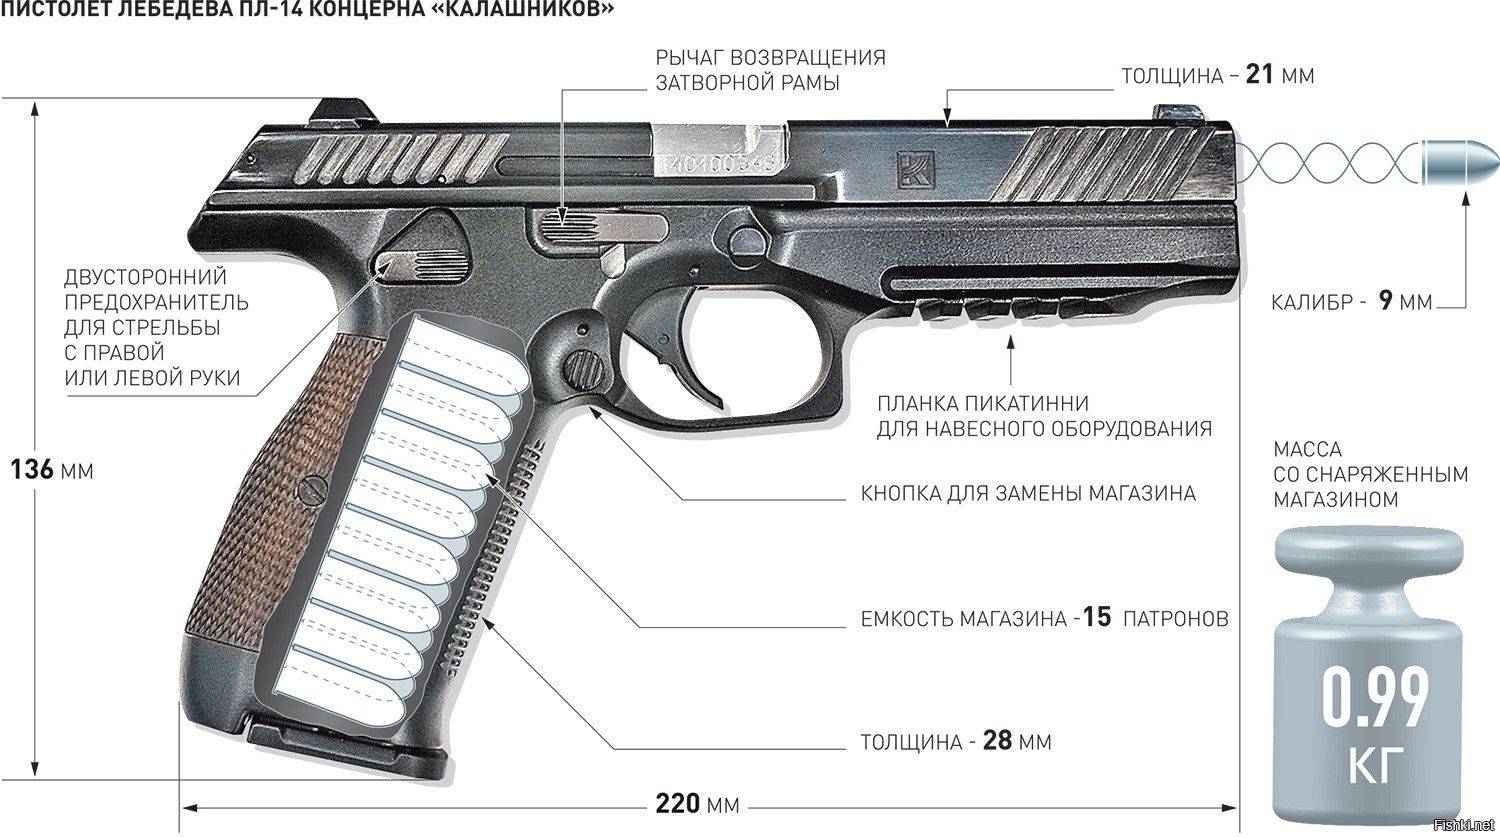 ✅ пистолет лебедева пл-15: компактное оружие в новом исполнении от концерна калашникова, характеристики (ттх) - sport-nutrition-rus.ru